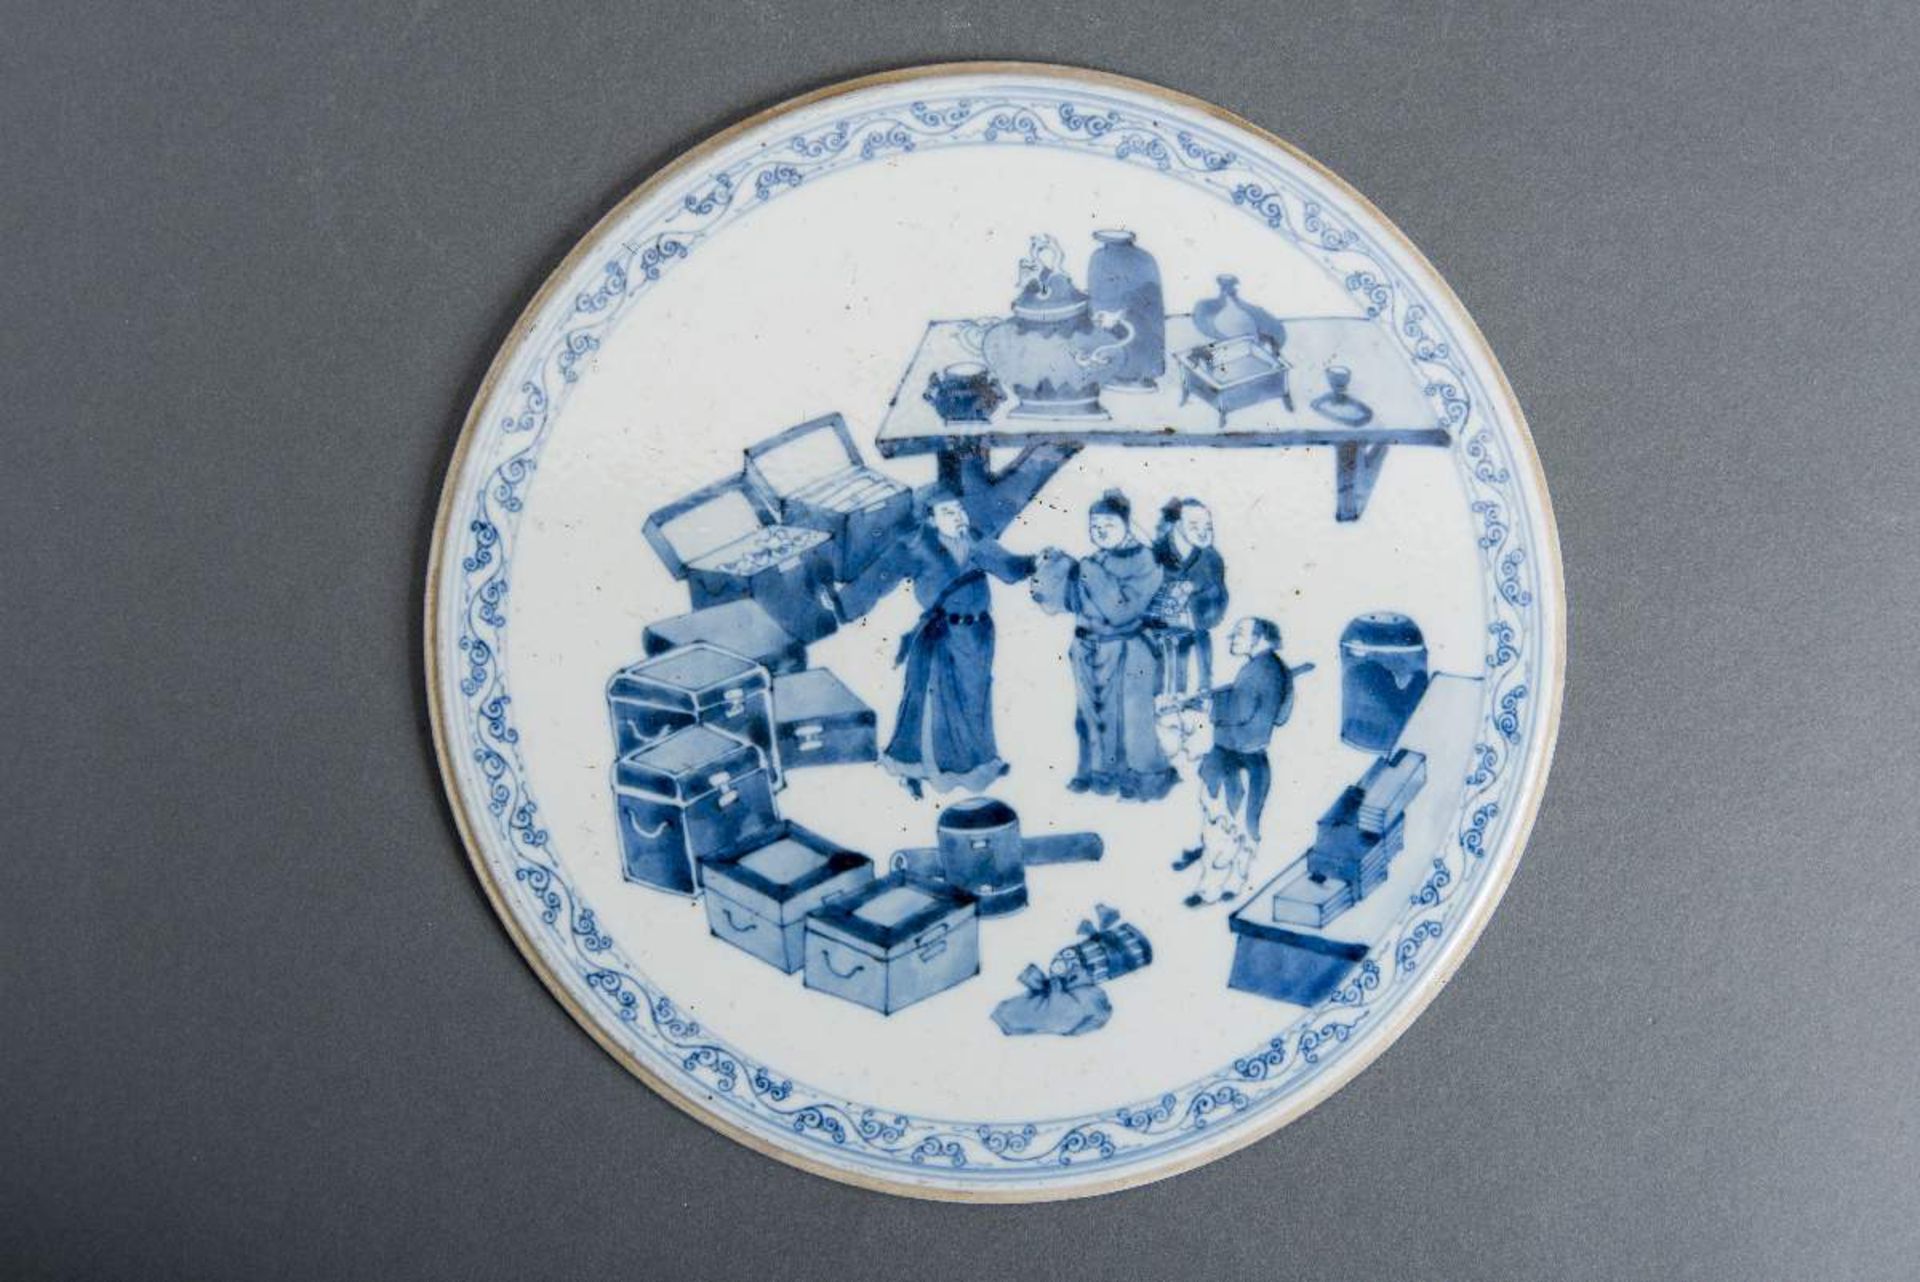 AMÜSANTE SZENE IN EINEM ANTIQITÄTEN- UND BÜCHERLADENWeißes Porzellan mit Unterglasurblau. China, 19.